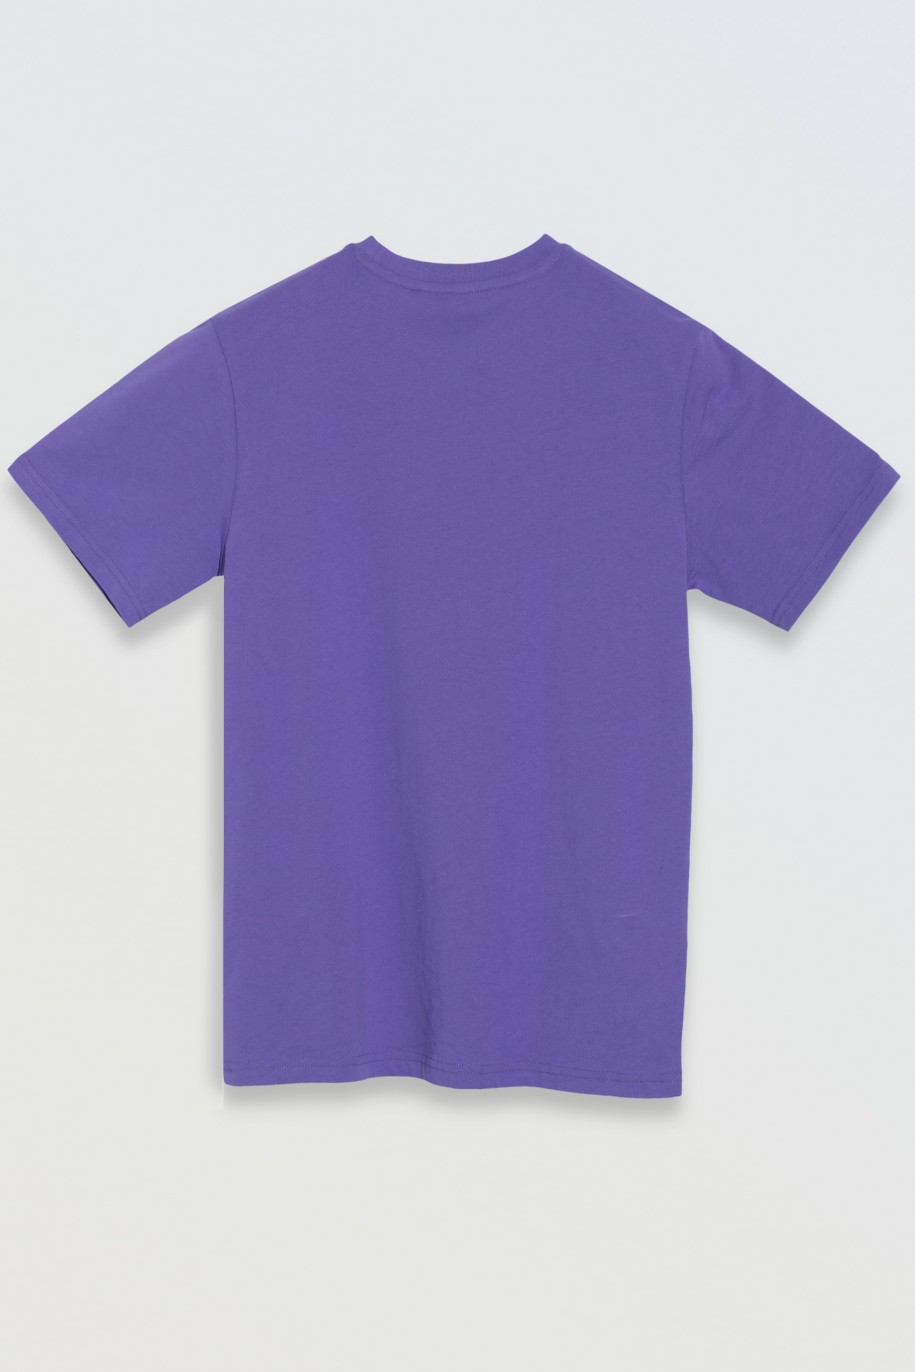 Fioletowy t-shirt z nadrukiem na wysokości piersi - 46714